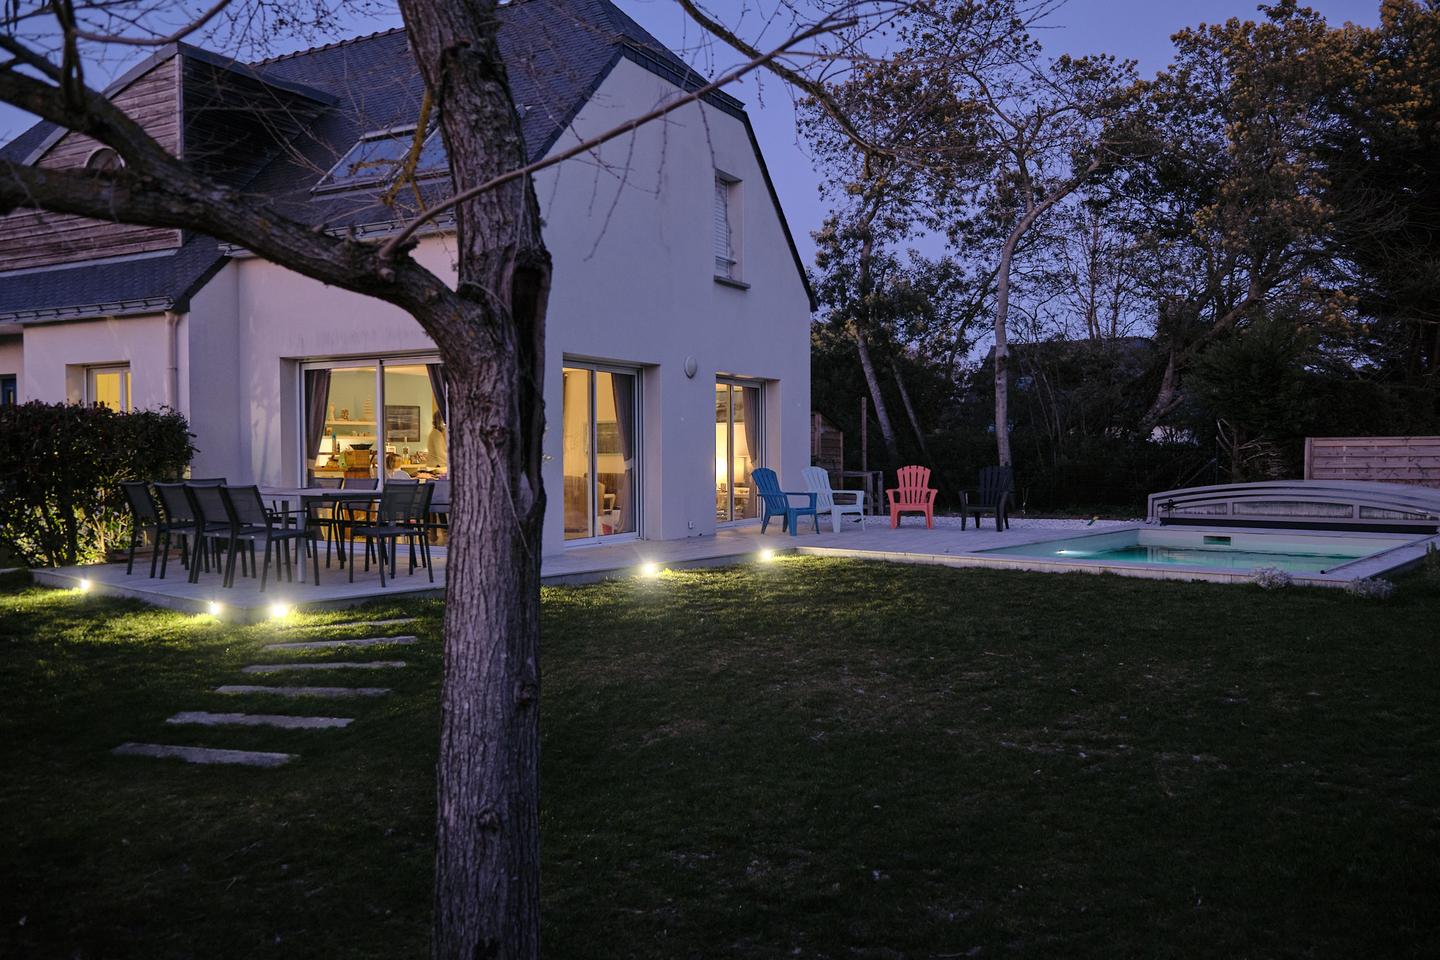 Hôte GreenGo: Grande maison familiale avec piscine pour 10 personnes, 12 max. Note de 4.9 sur une autre plateforme - Image 11